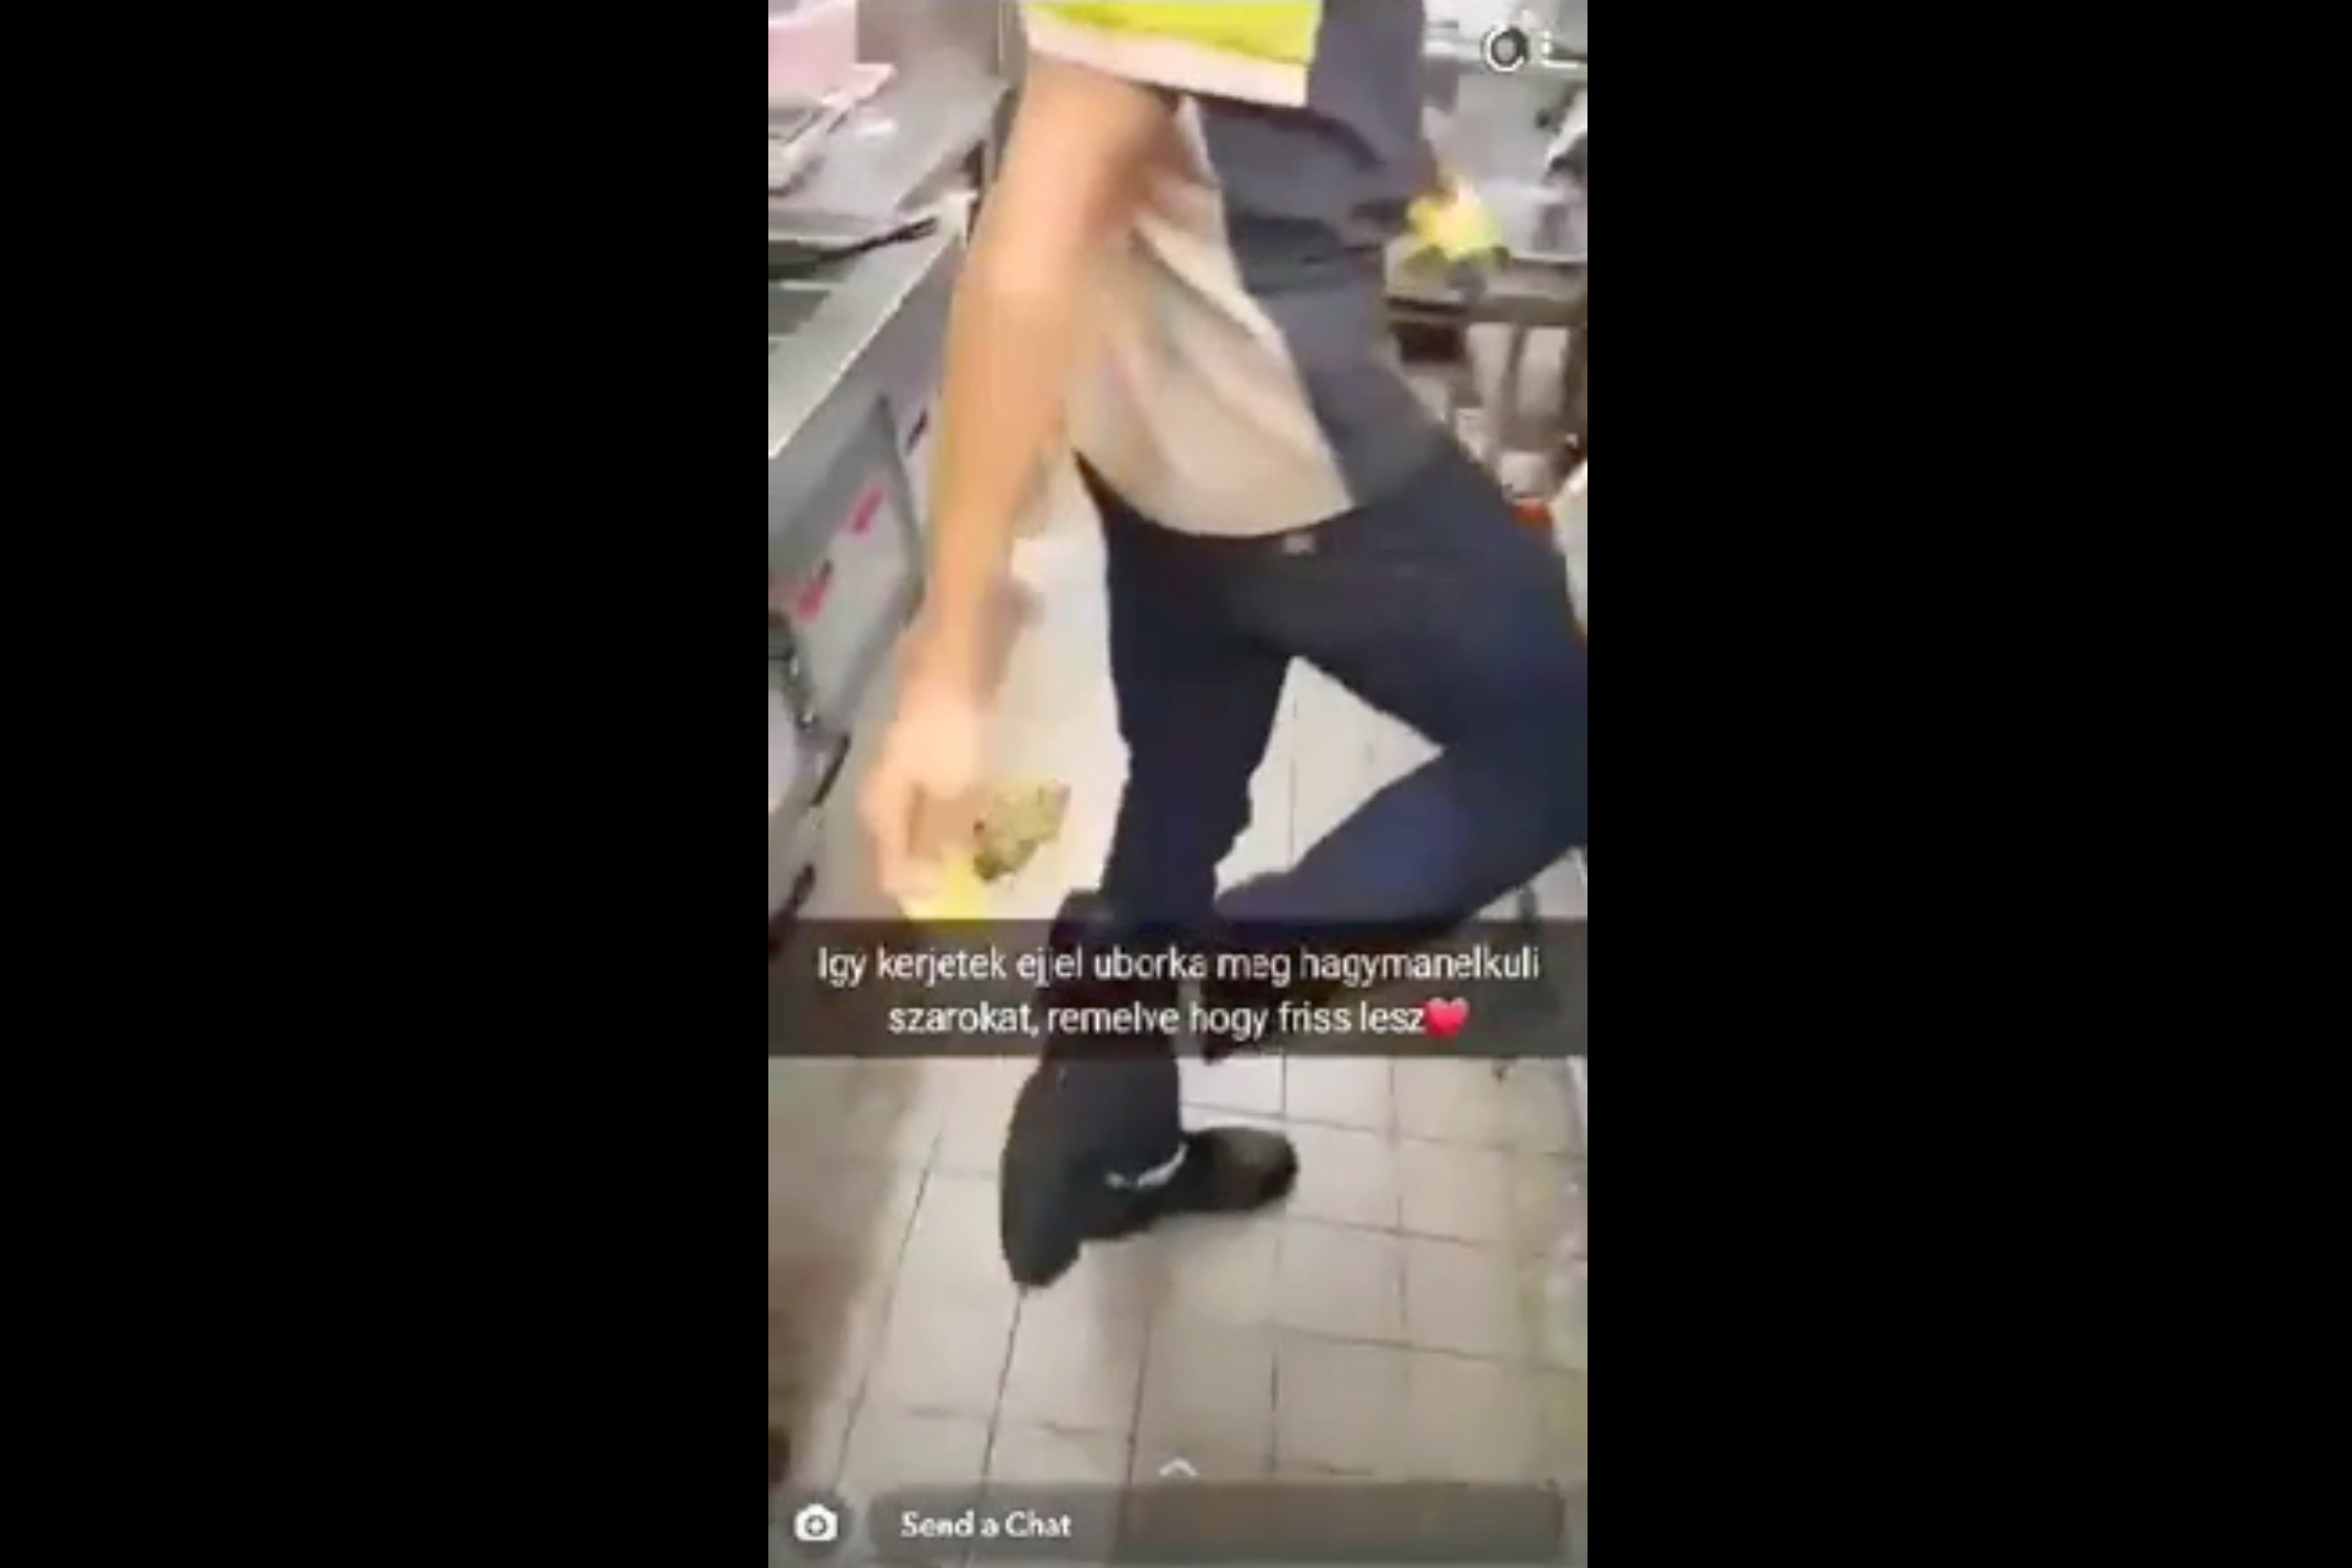 Vizsgálatot indított a magyar McDonald's a videó miatt, amiben egy dolgozó a cipőjébe törli, majd szendvicsbe teszi a sajtot, és földről szedi fel a húst